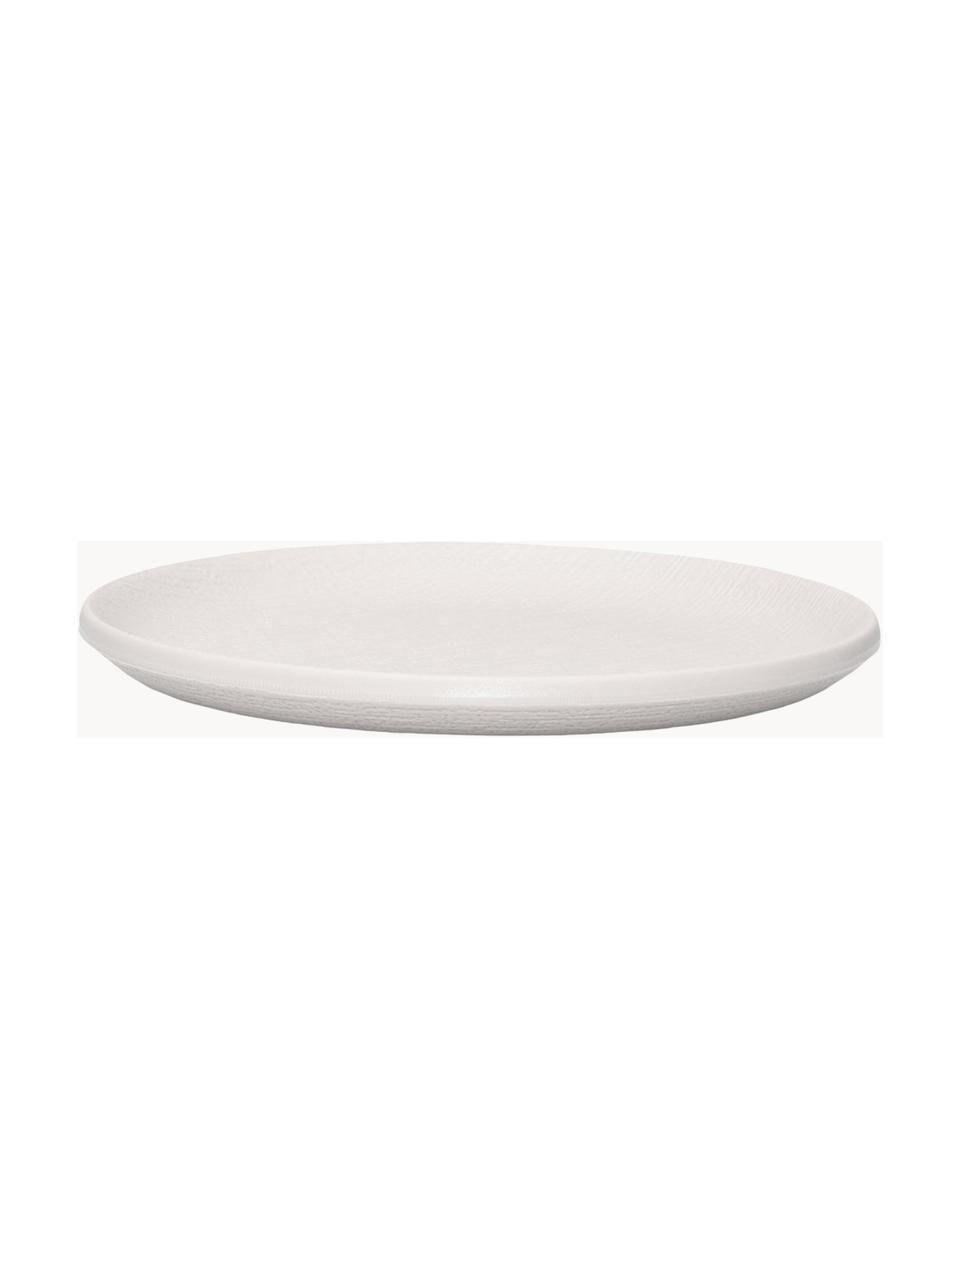 Snídaňové talíře z melaminu Trama, 4 ks, Melamin, Matná bílá, Ø 16 cm, V 2 cm